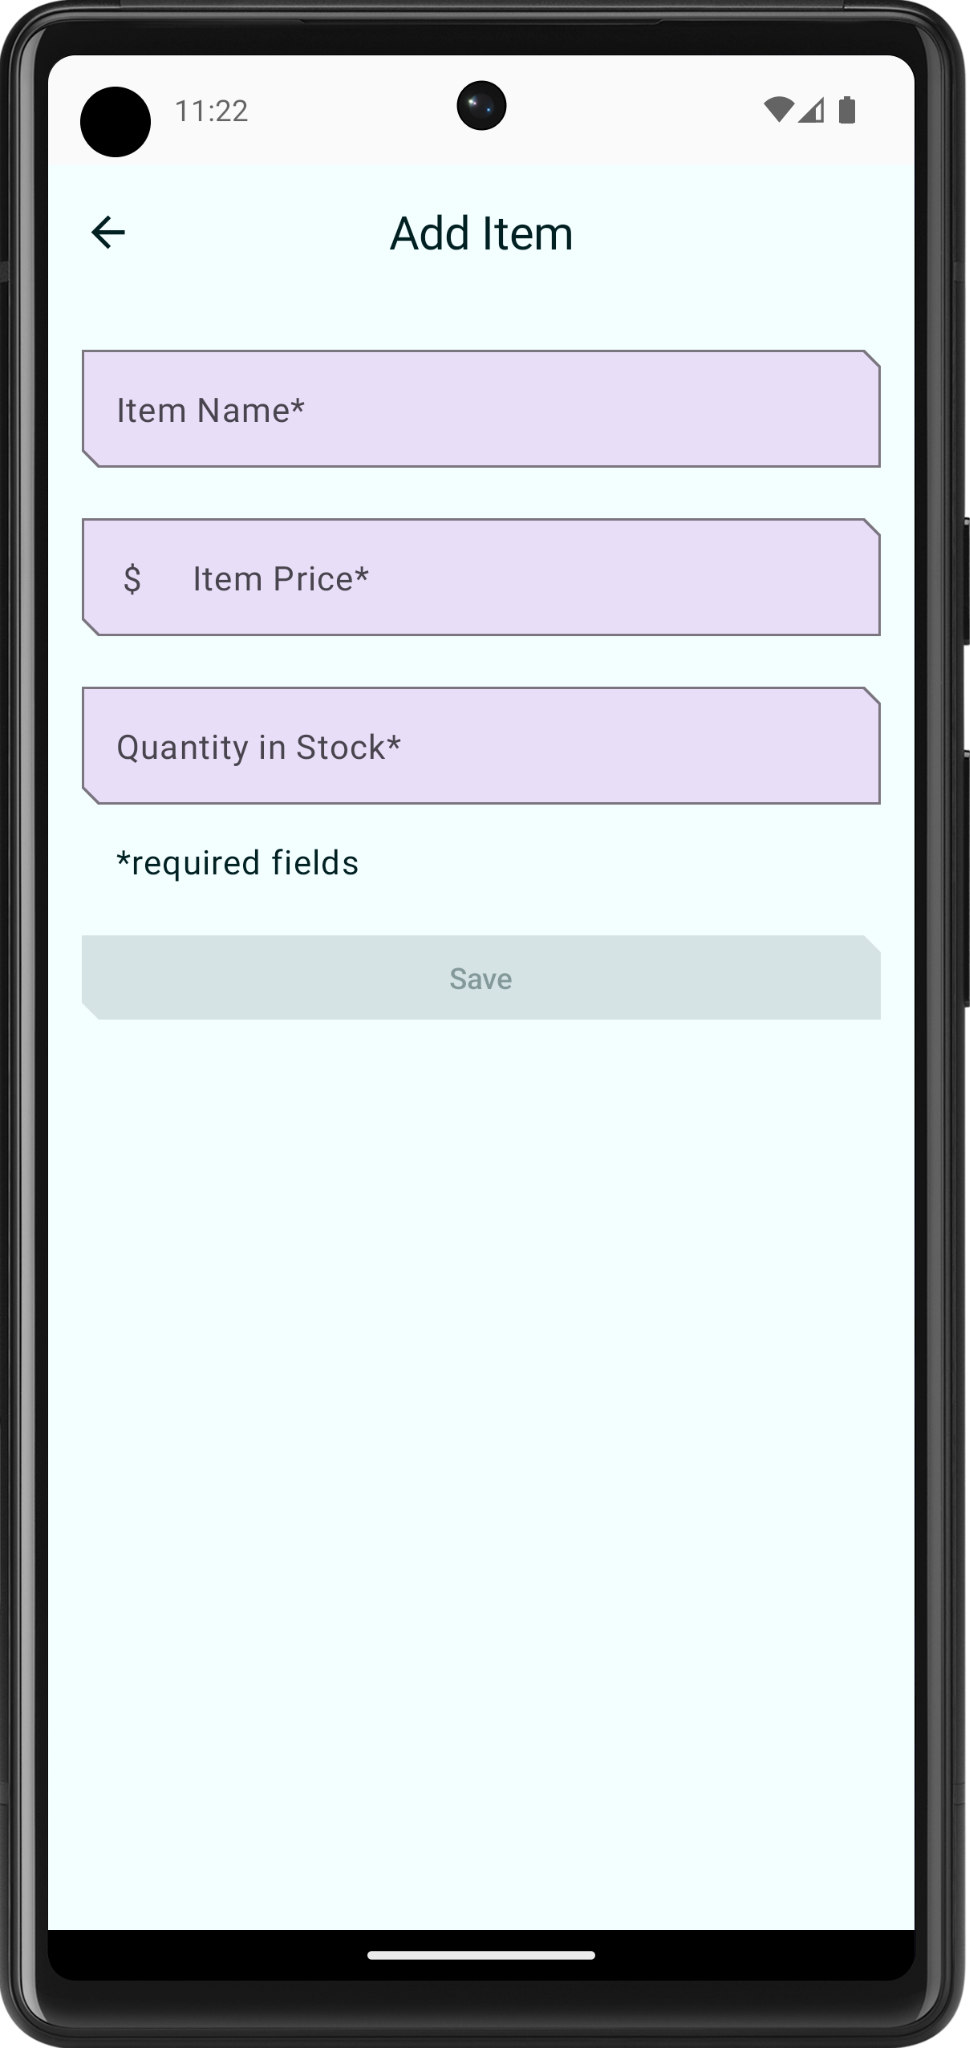 Màn hình Add item (Thêm mặt hàng) hiện trên màn hình điện thoại. 